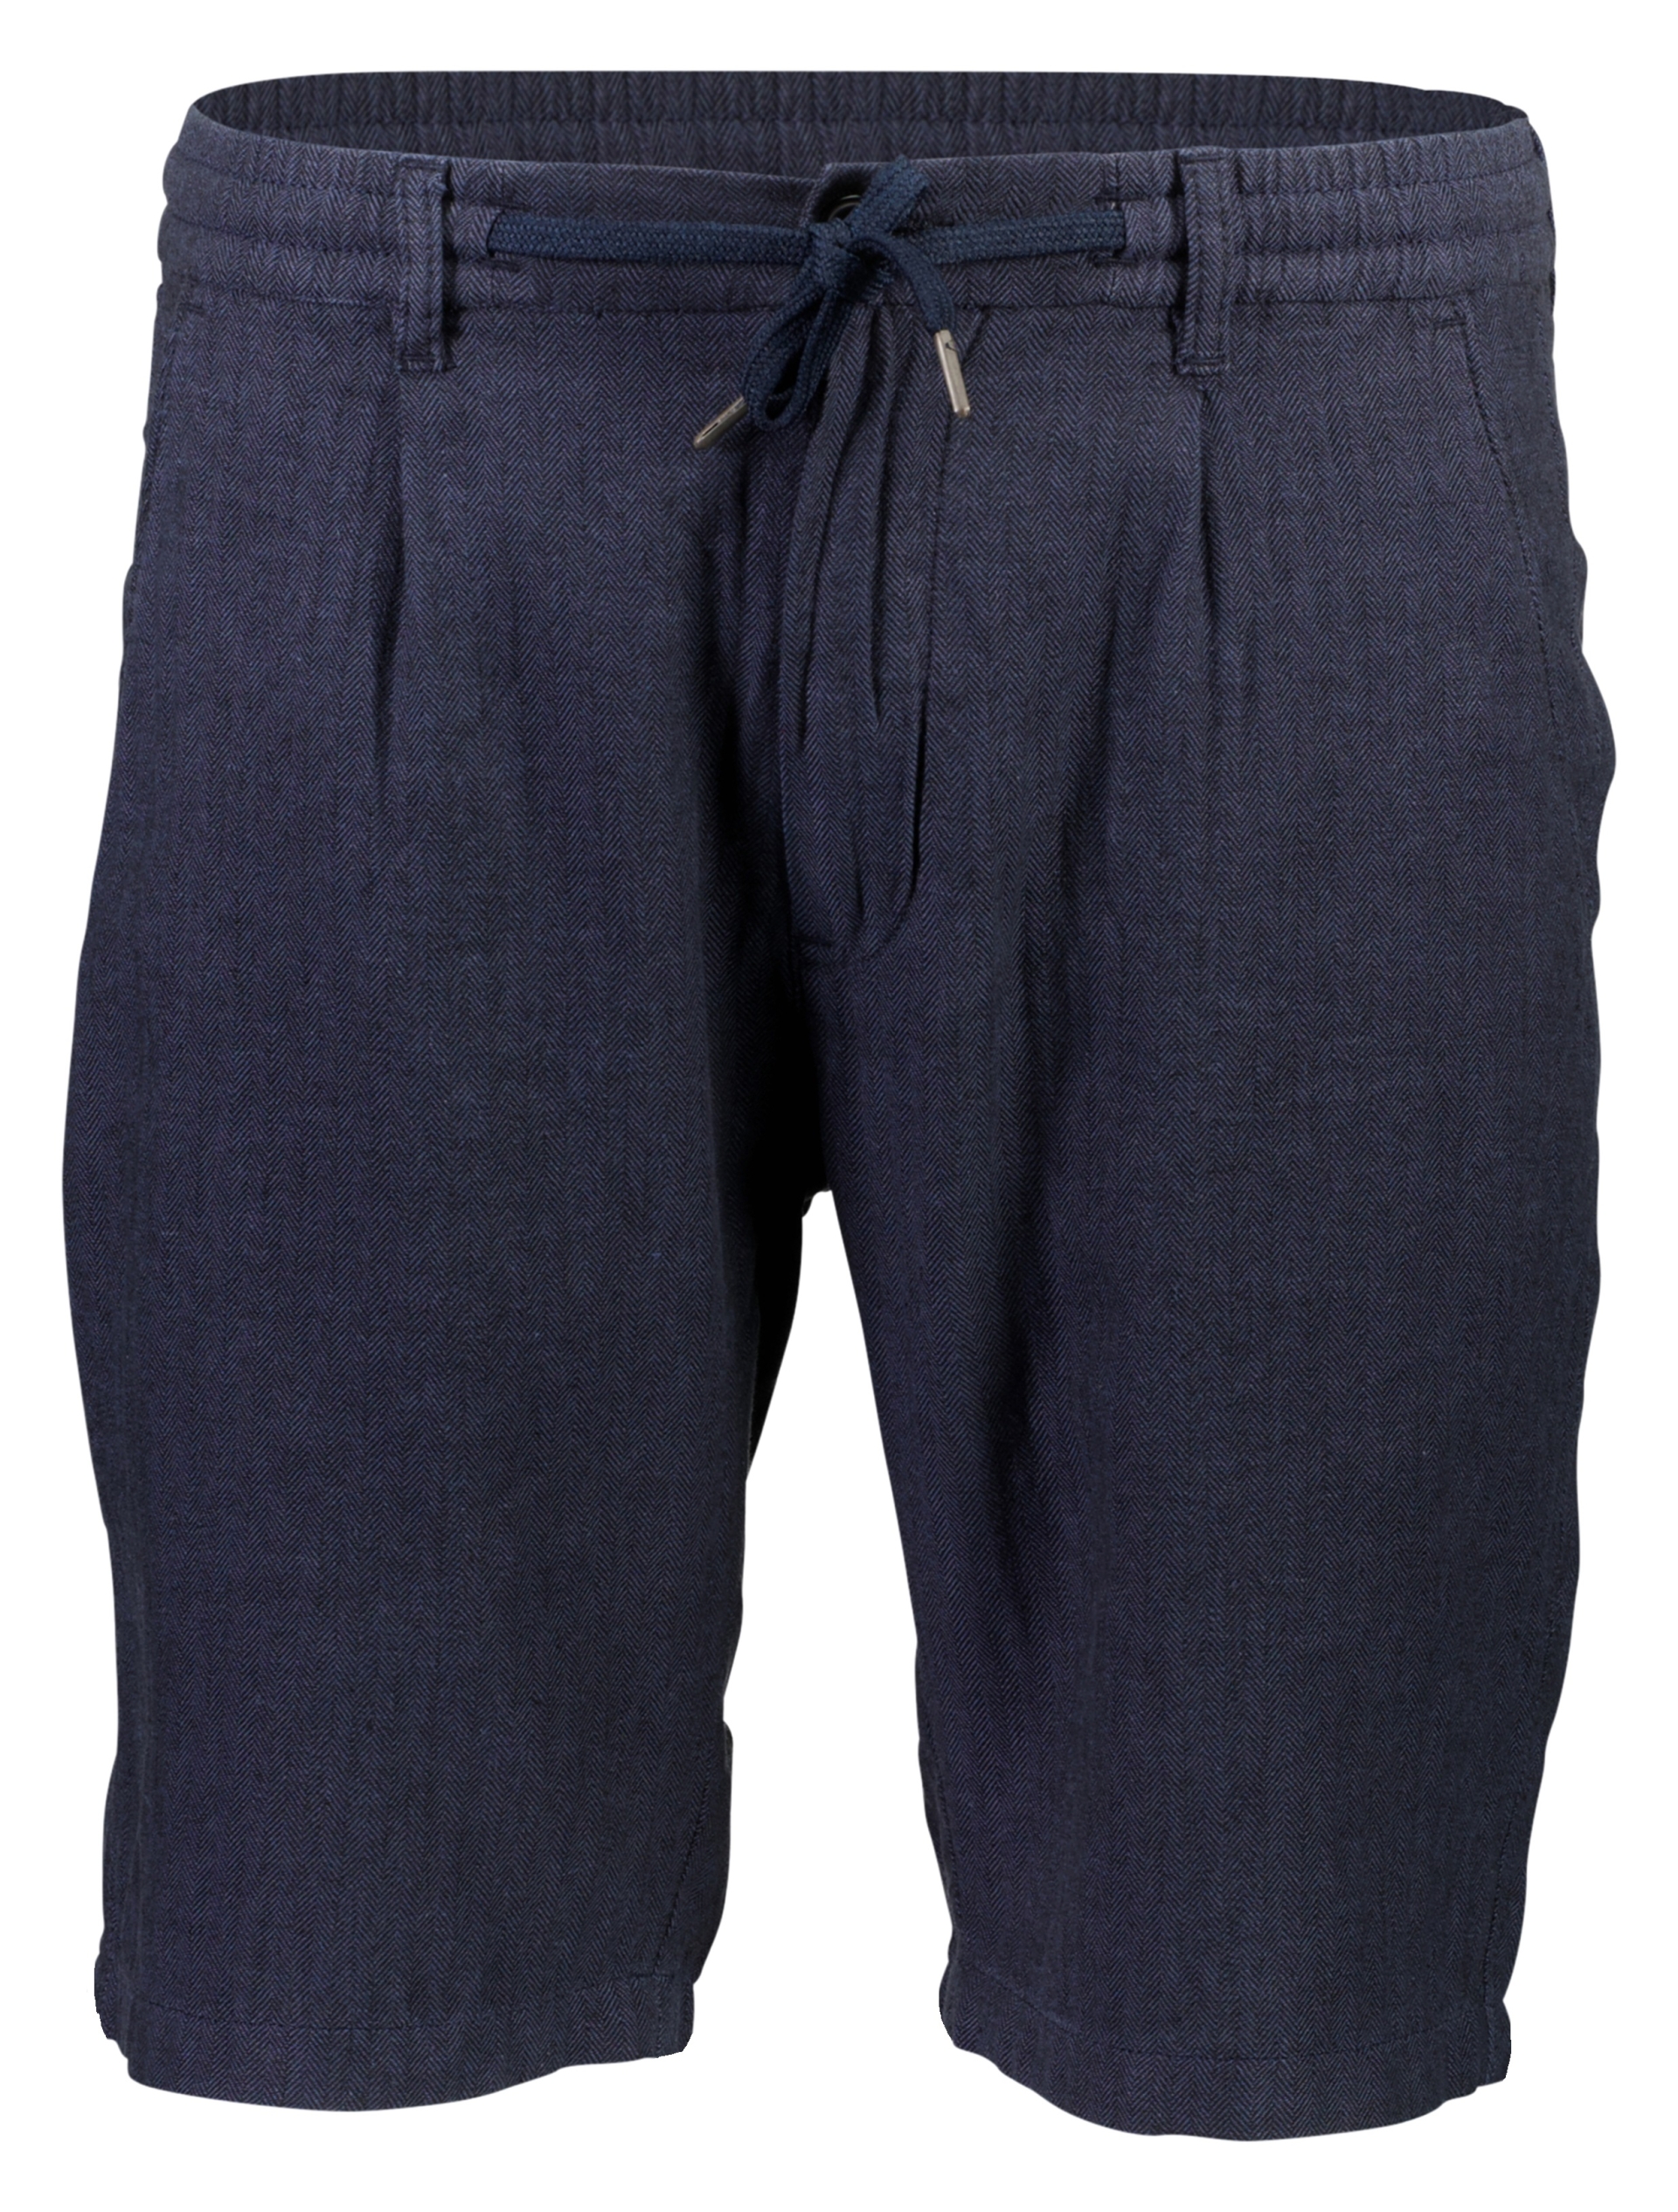 Lindbergh Linen shorts blue / navy